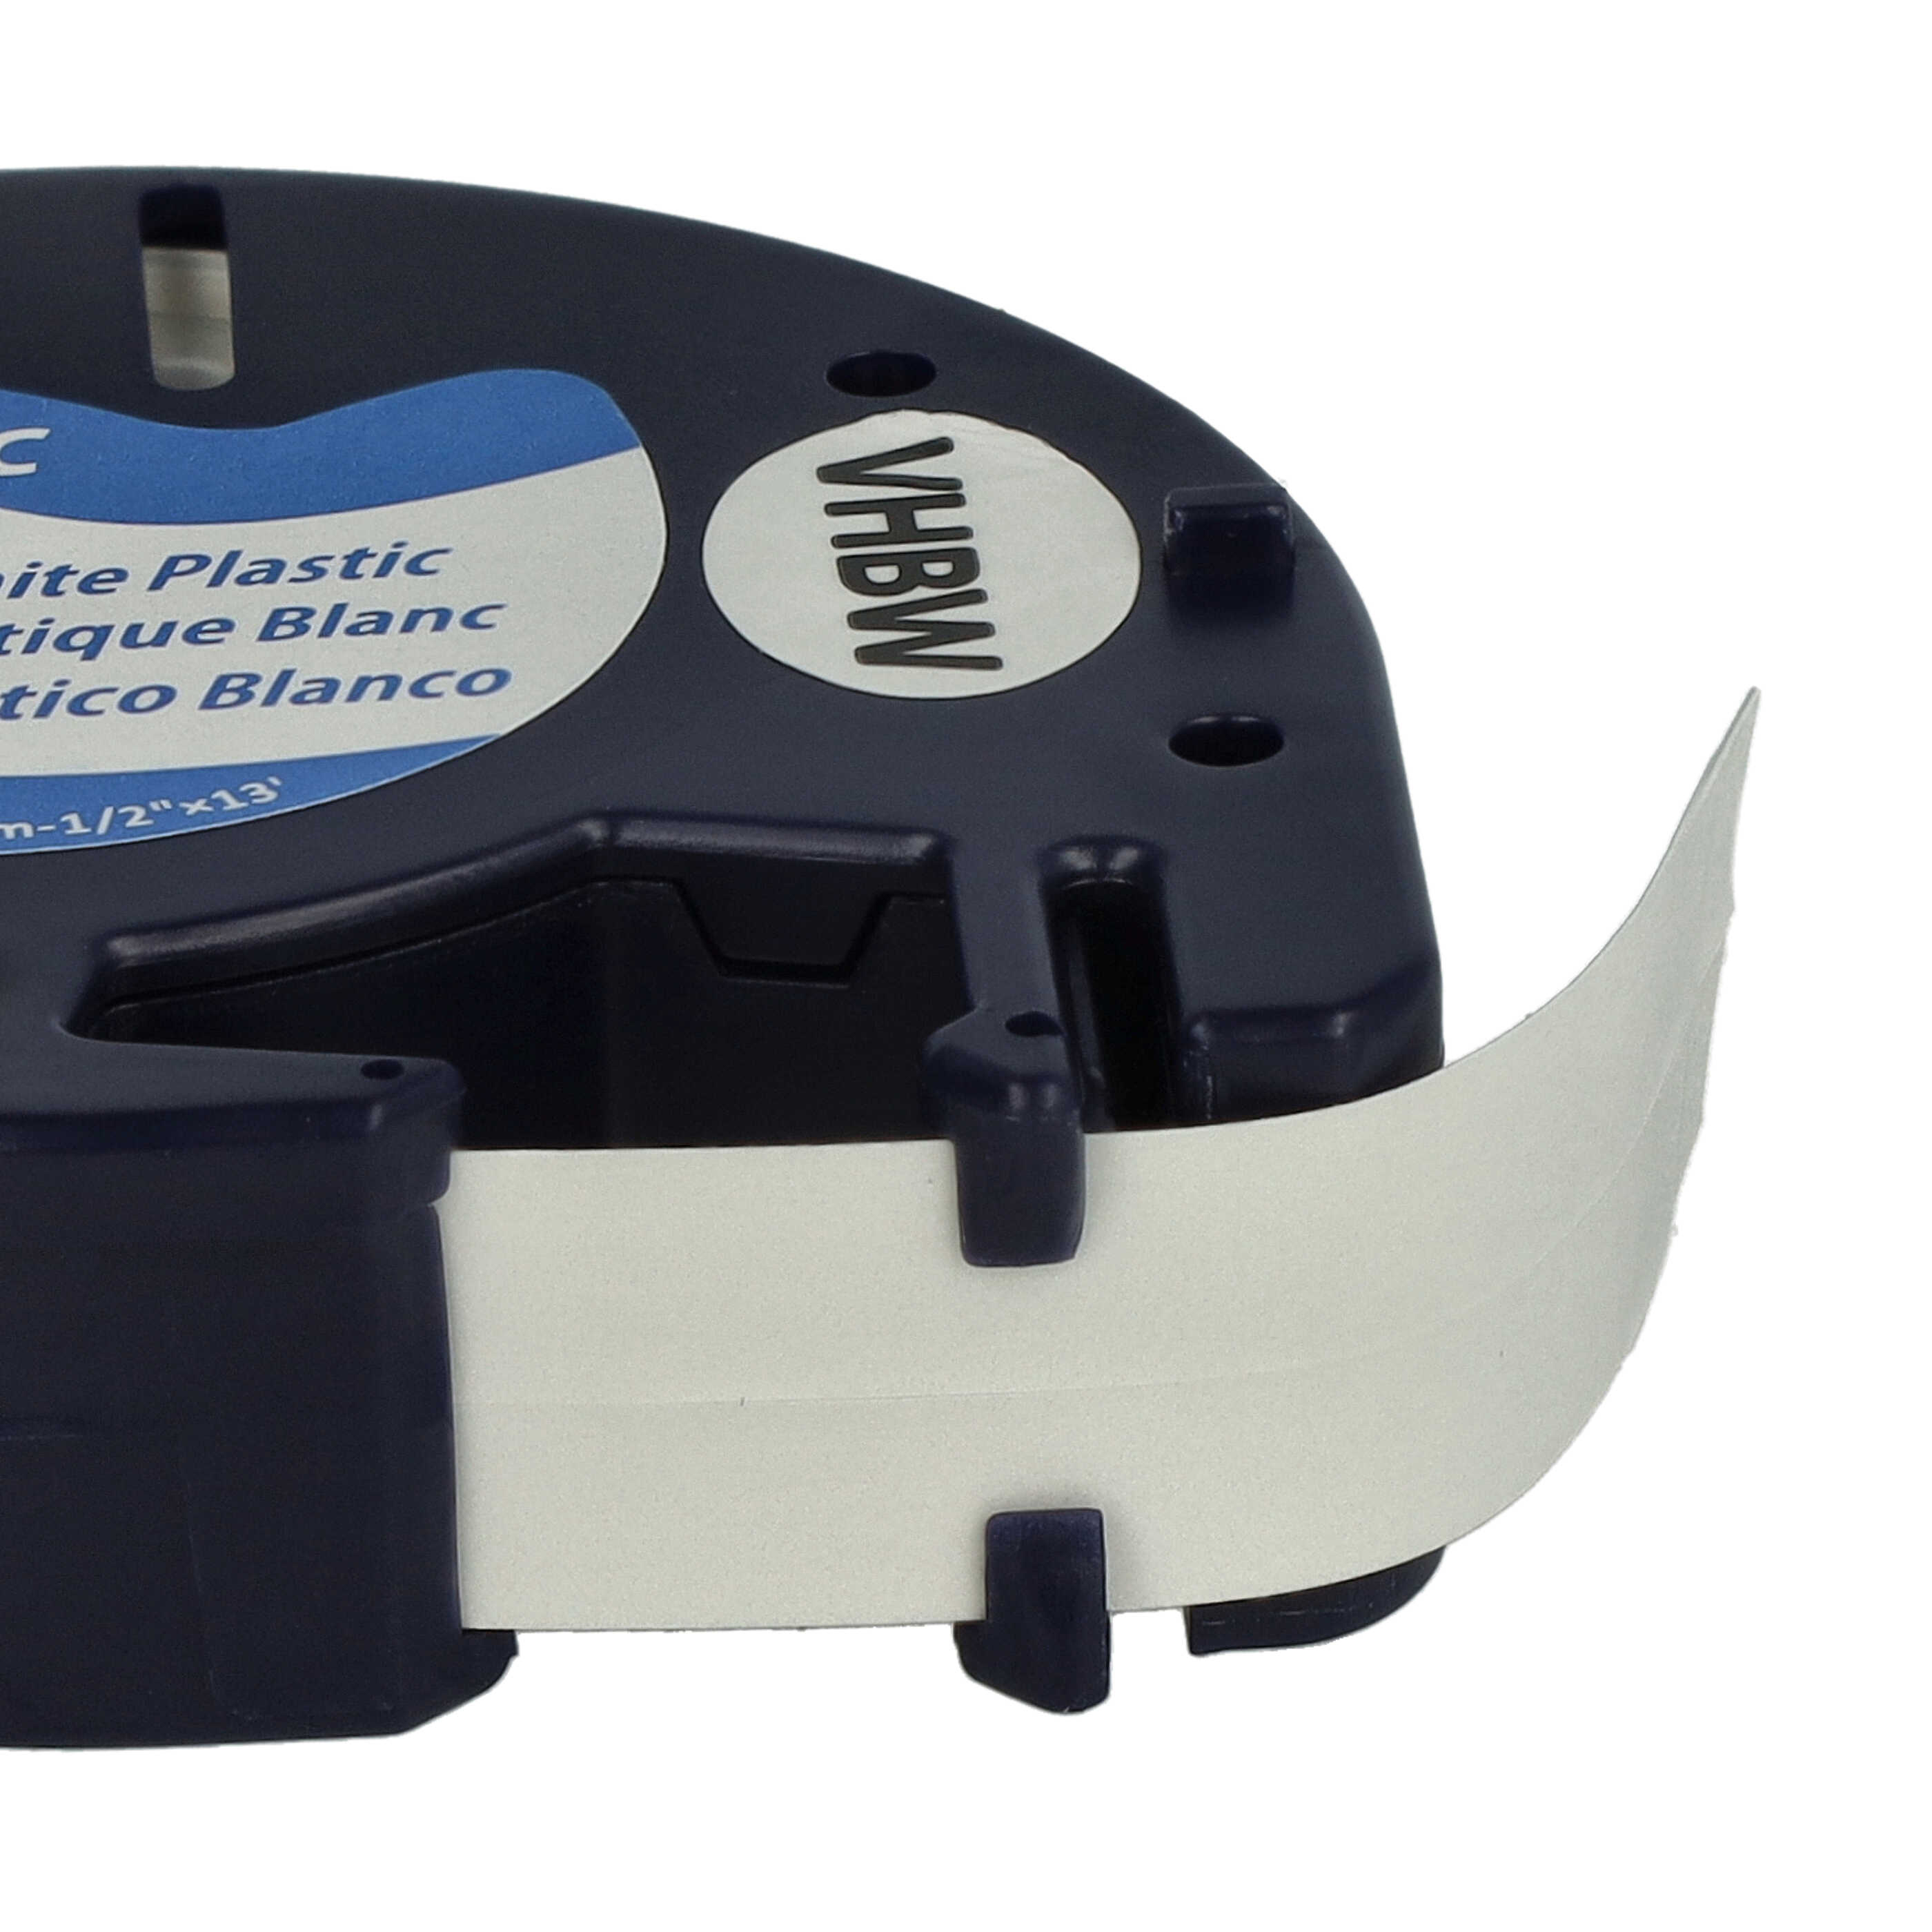 Cassette à ruban en plastique remplace Dymo S0721660, 91221 - 12mm lettrage Noir ruban Blanc, plastique